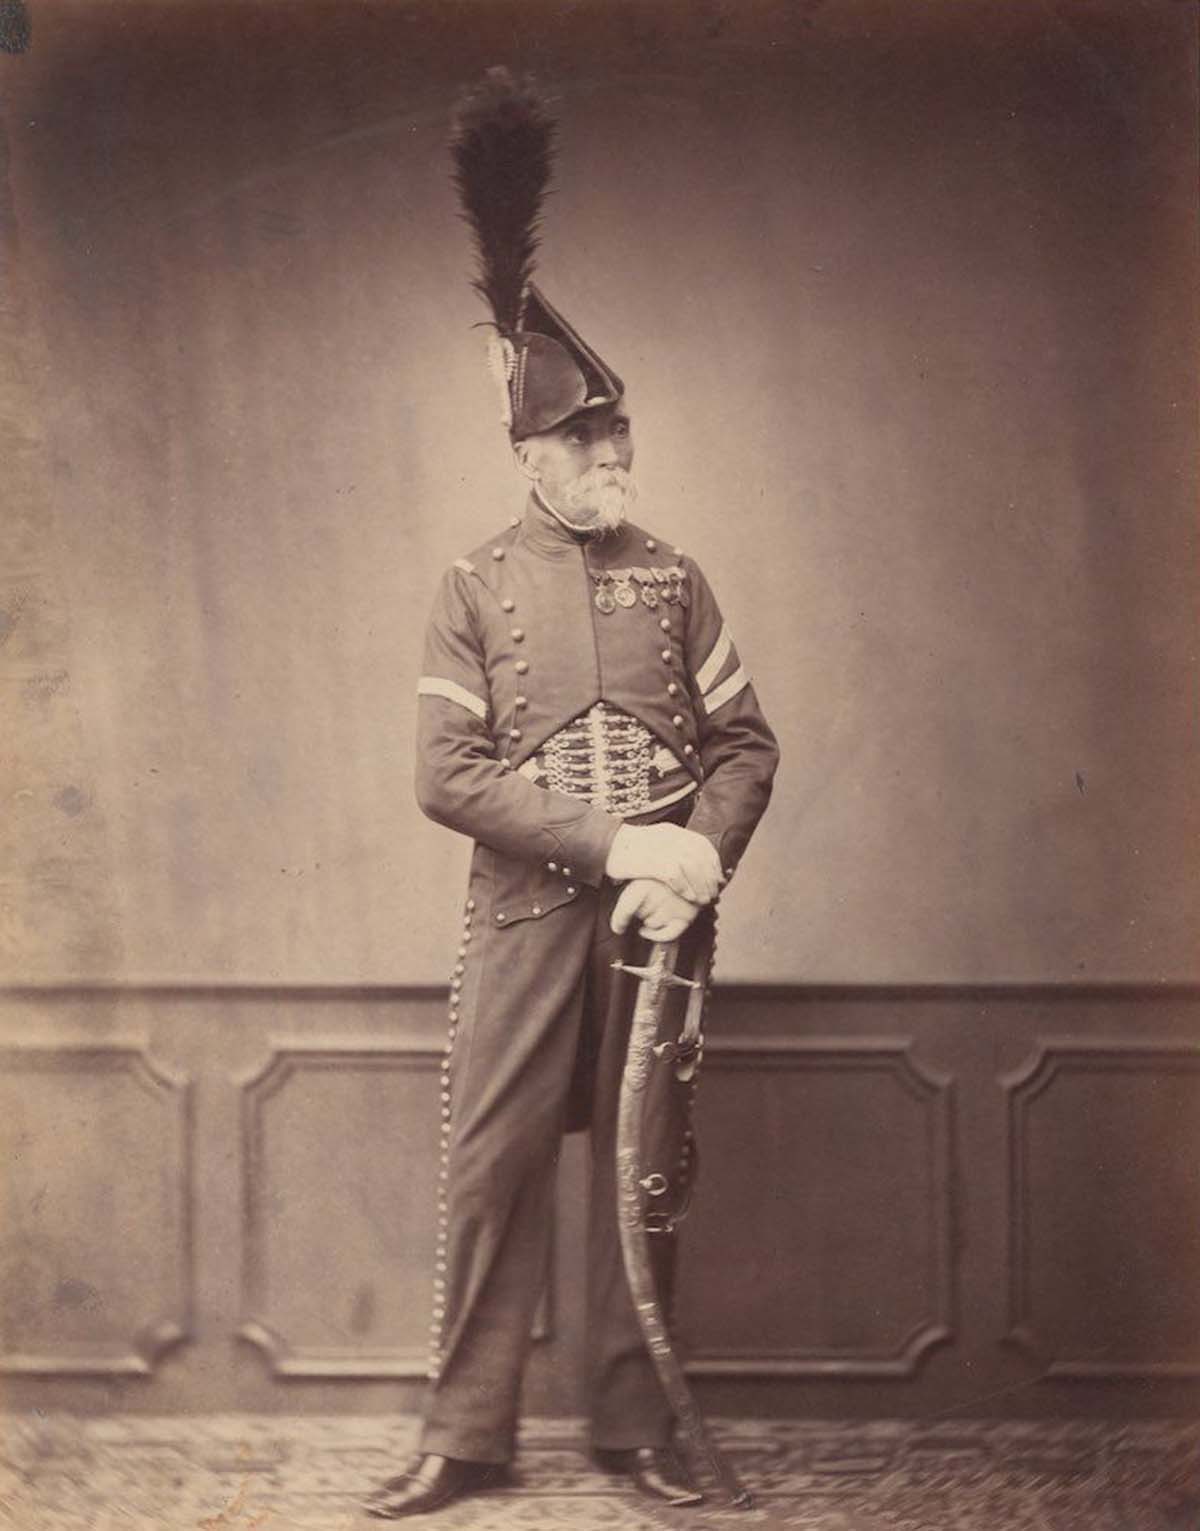 Des photos d'époque de vétérans des Guerres Napoléoniennes, 1858